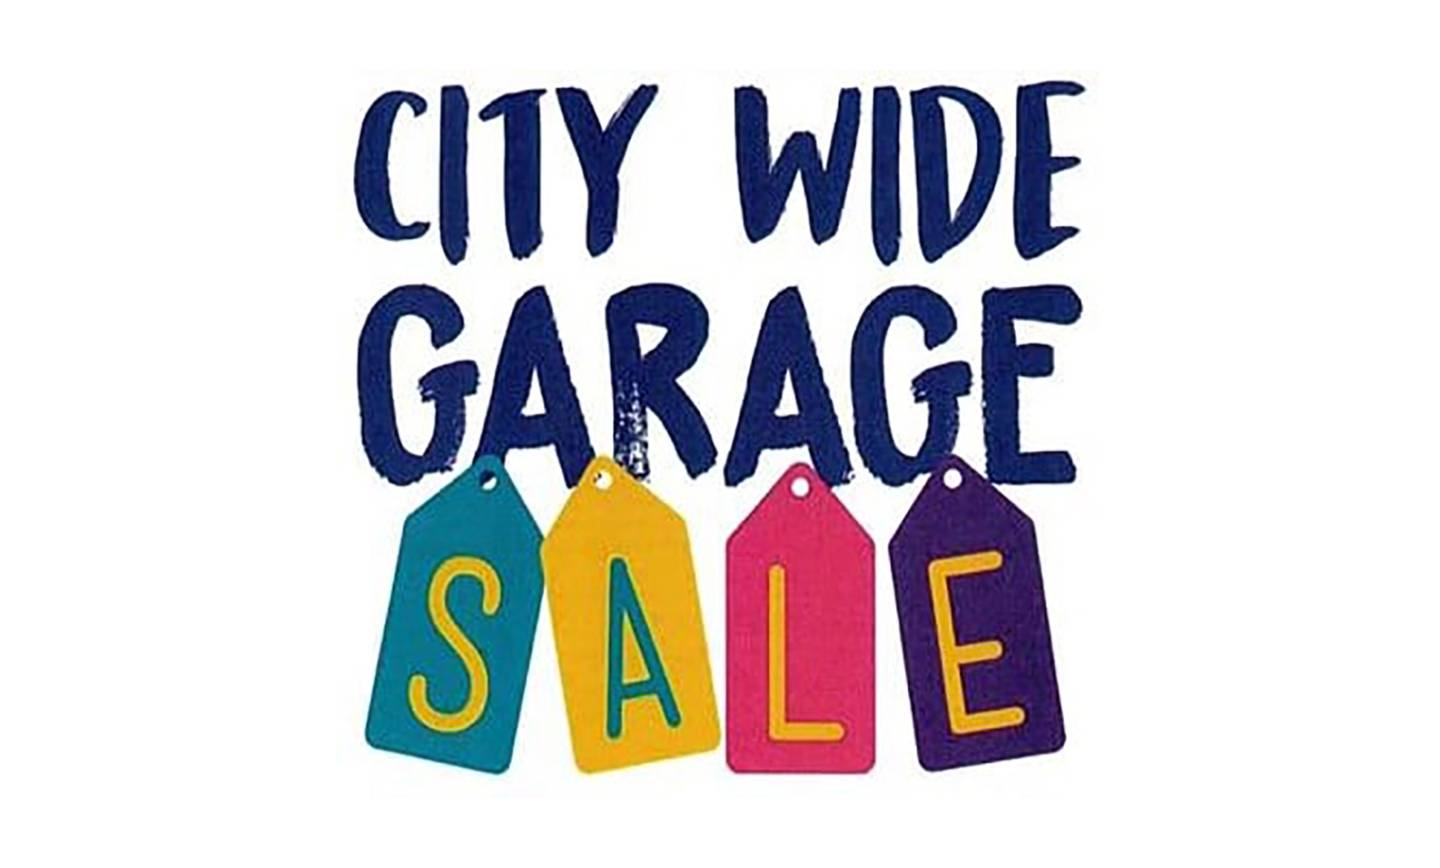 City Wide Garage Sales